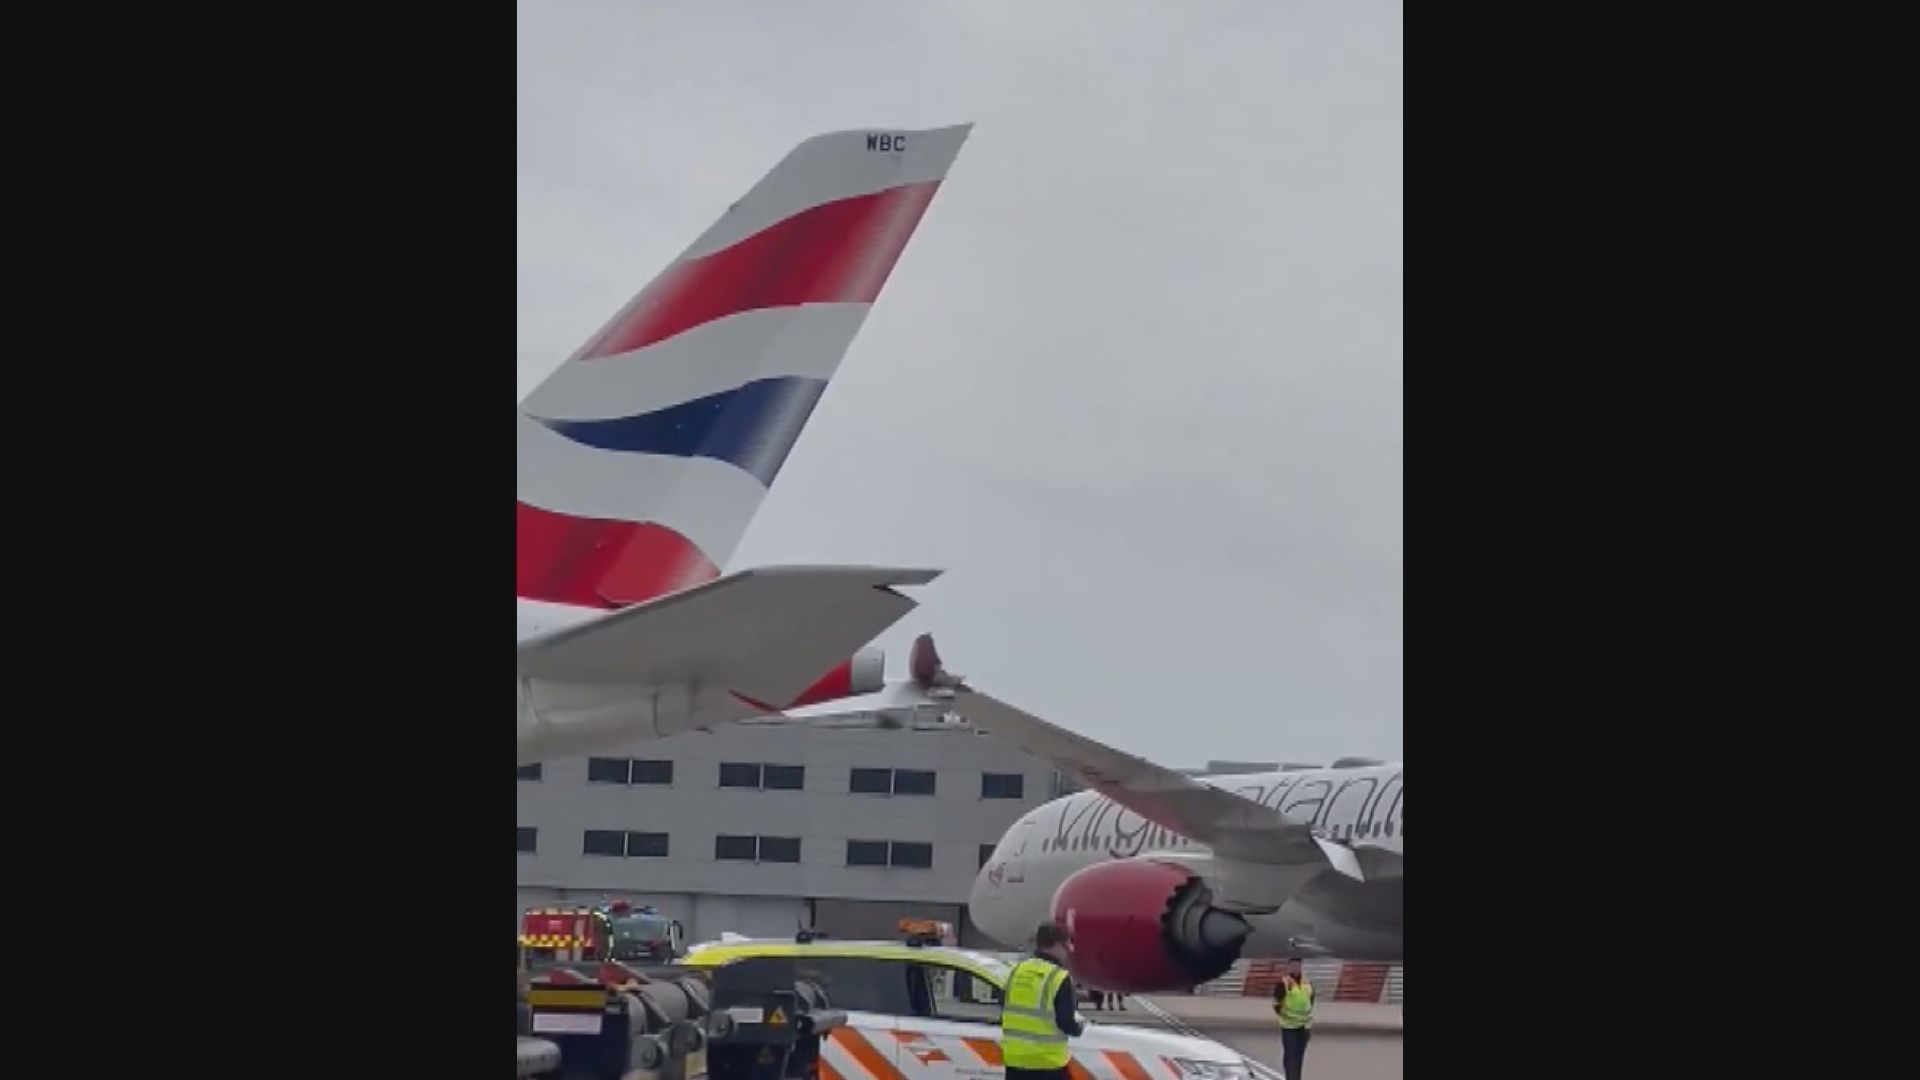 倫敦希思羅機場發生機翼碰撞事件 無人傷